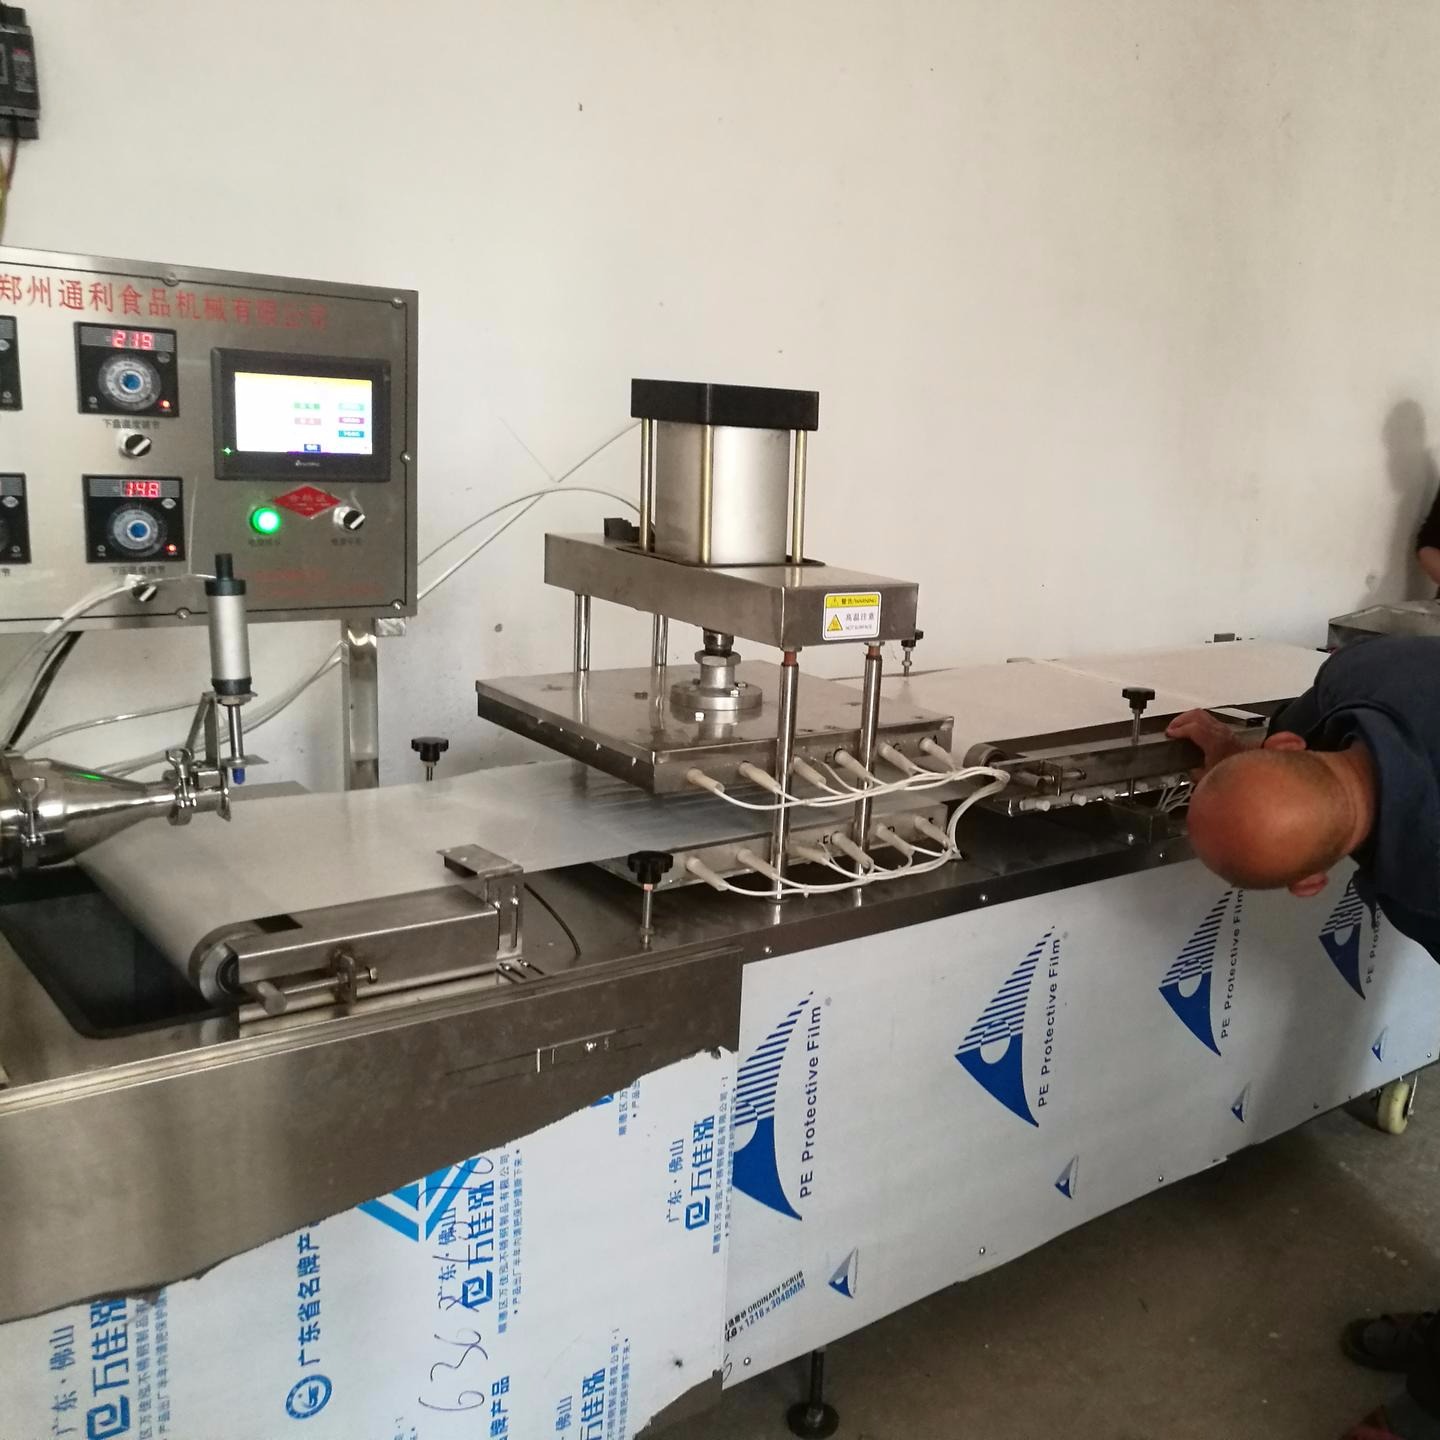 安徽烙馍机 带烤箱烙馍机器 全自动烙饼机器 450型水烙馍机厂家